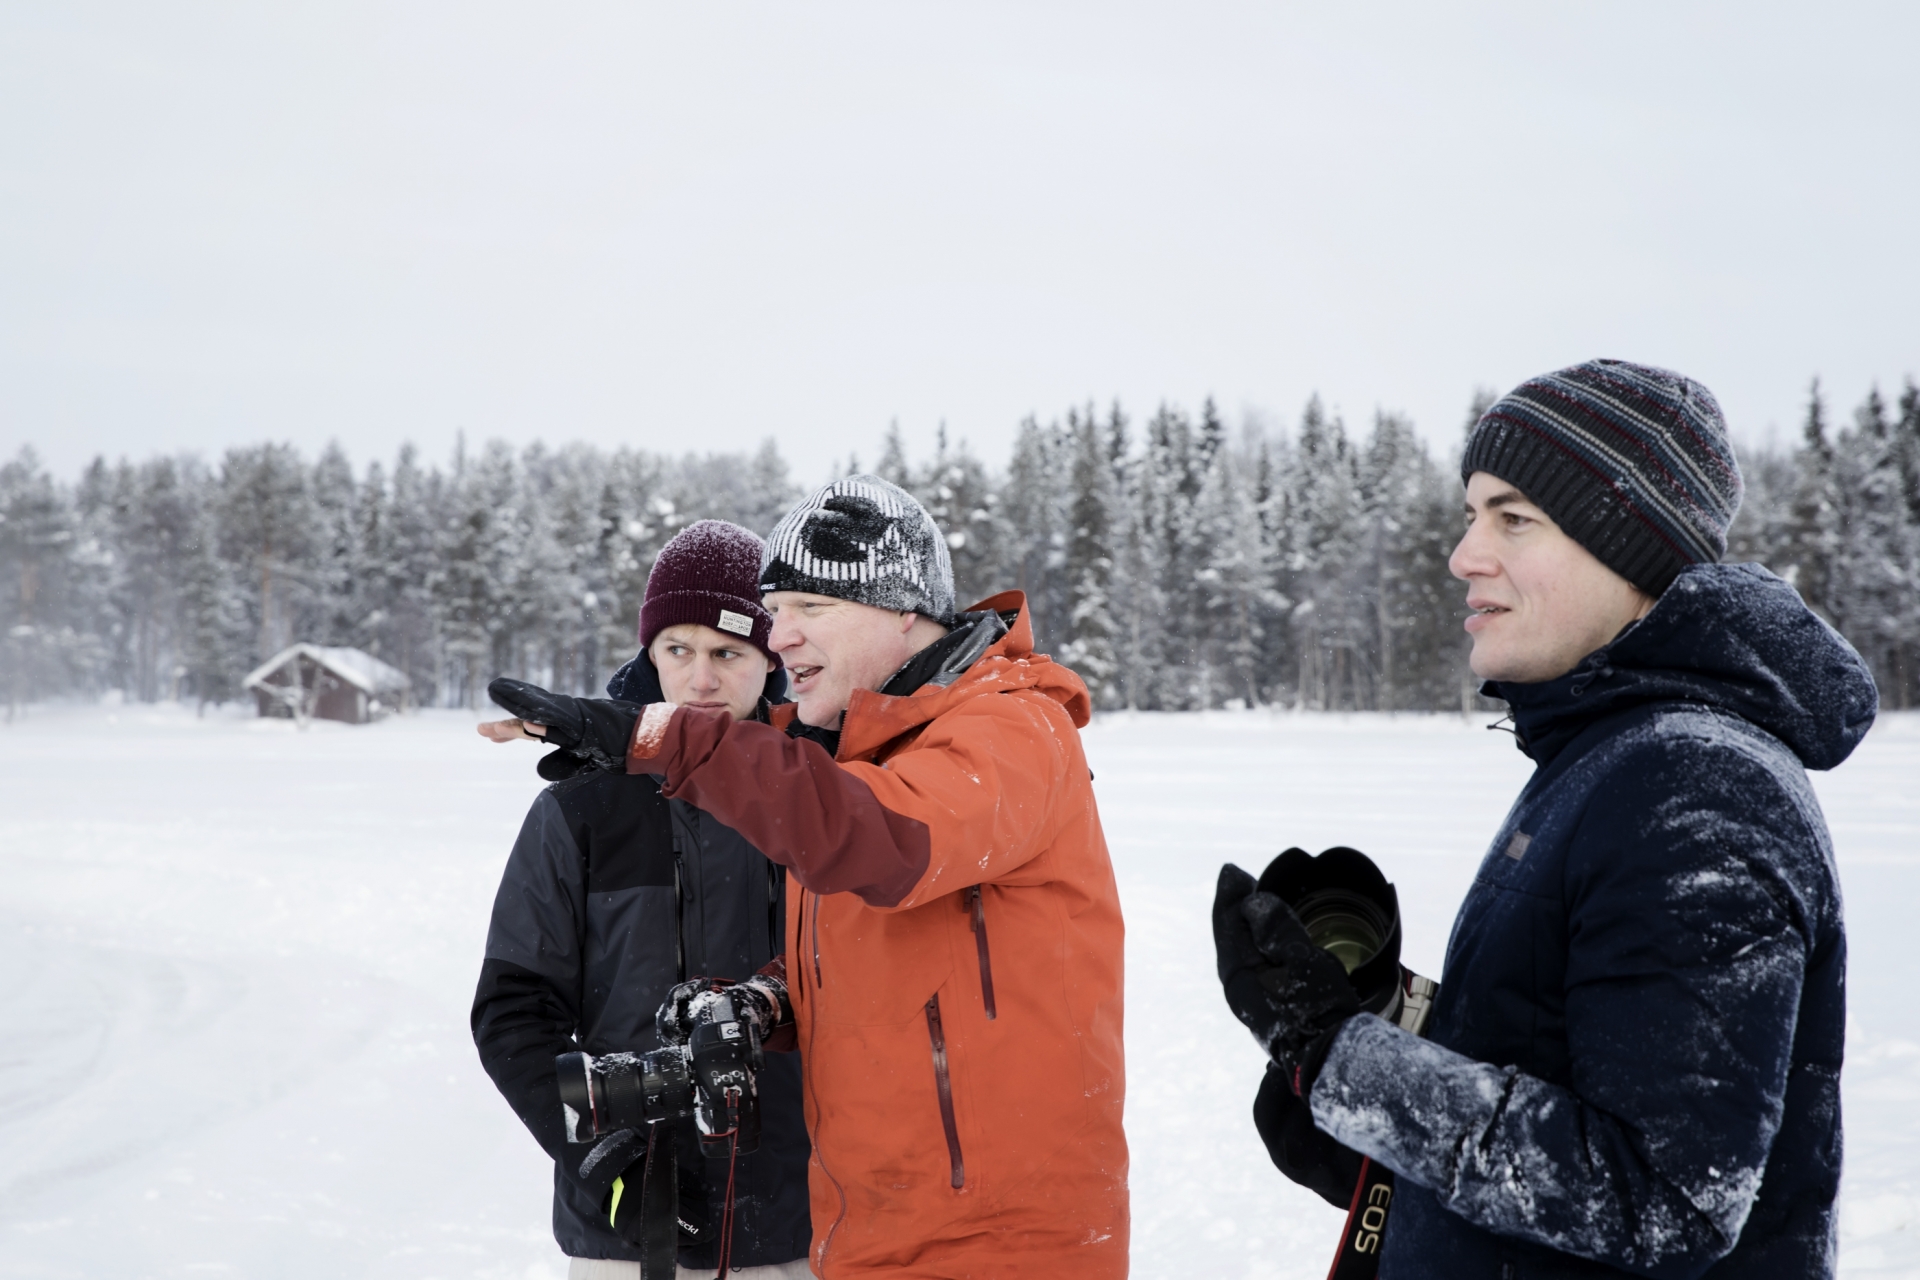 Richard Walch, Winter, Fotografie, Schnee